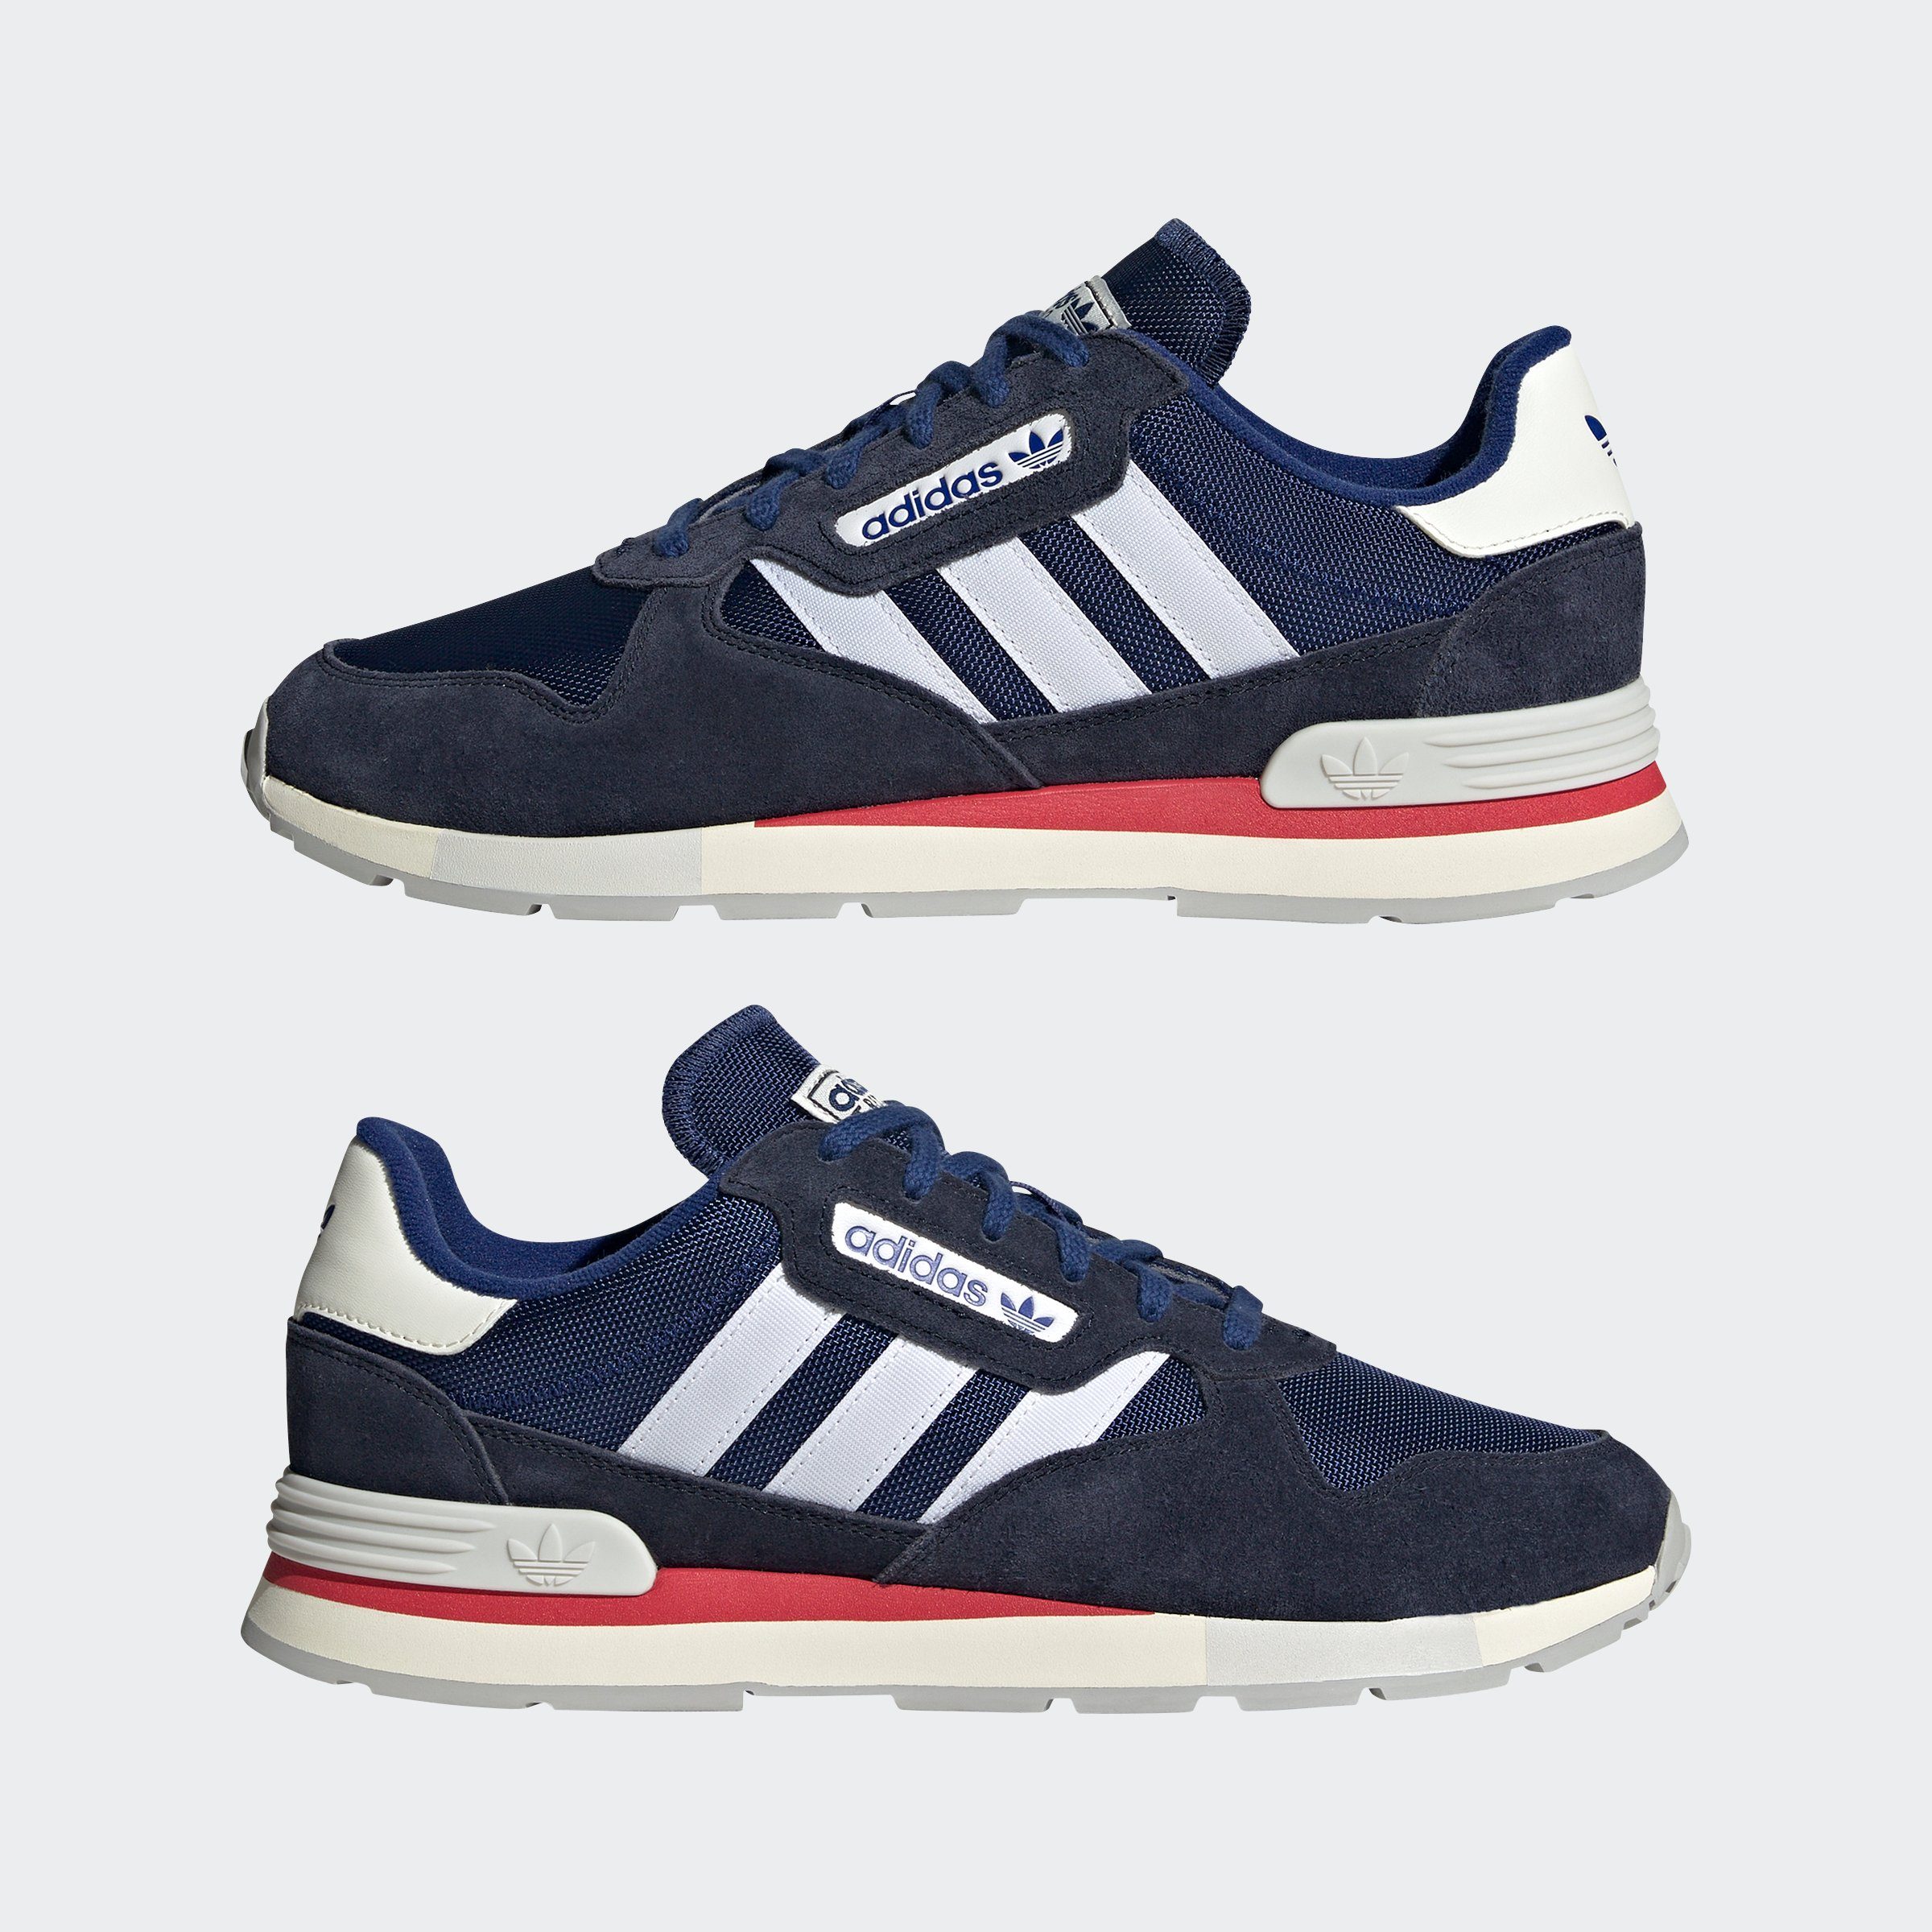 adidas Originals blauweissblau Sneaker 2 TREZIOD